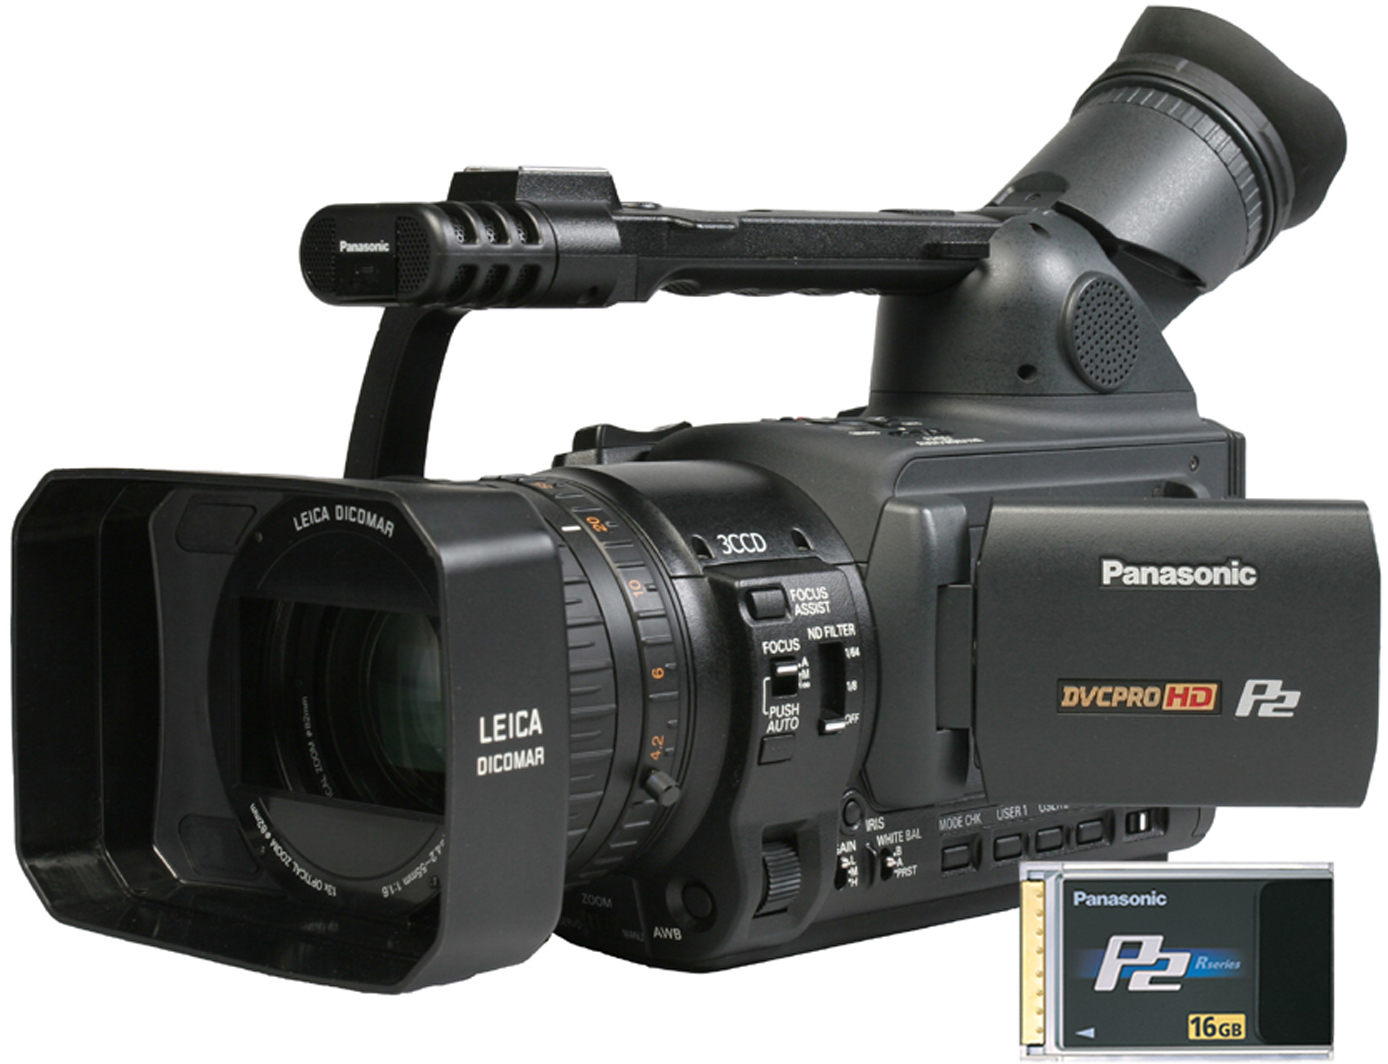 AG-HVX200,   Videocamara Panasonic  accesorios y repuestos